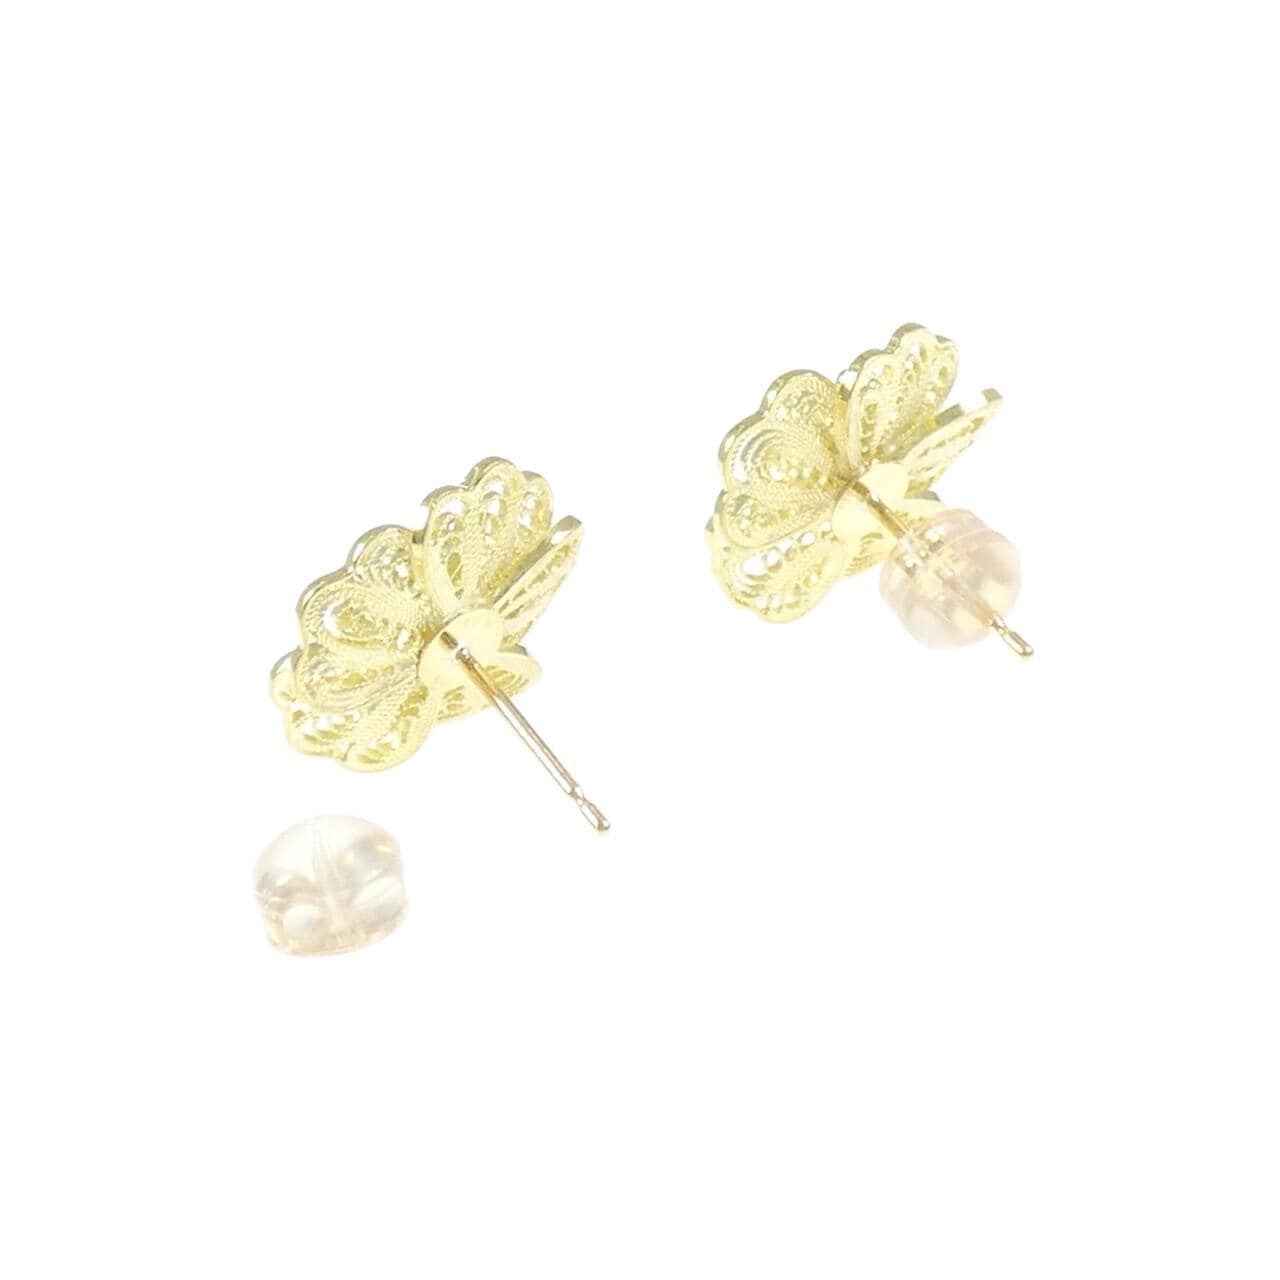 K18YG flower Diamond earrings 0.20CT